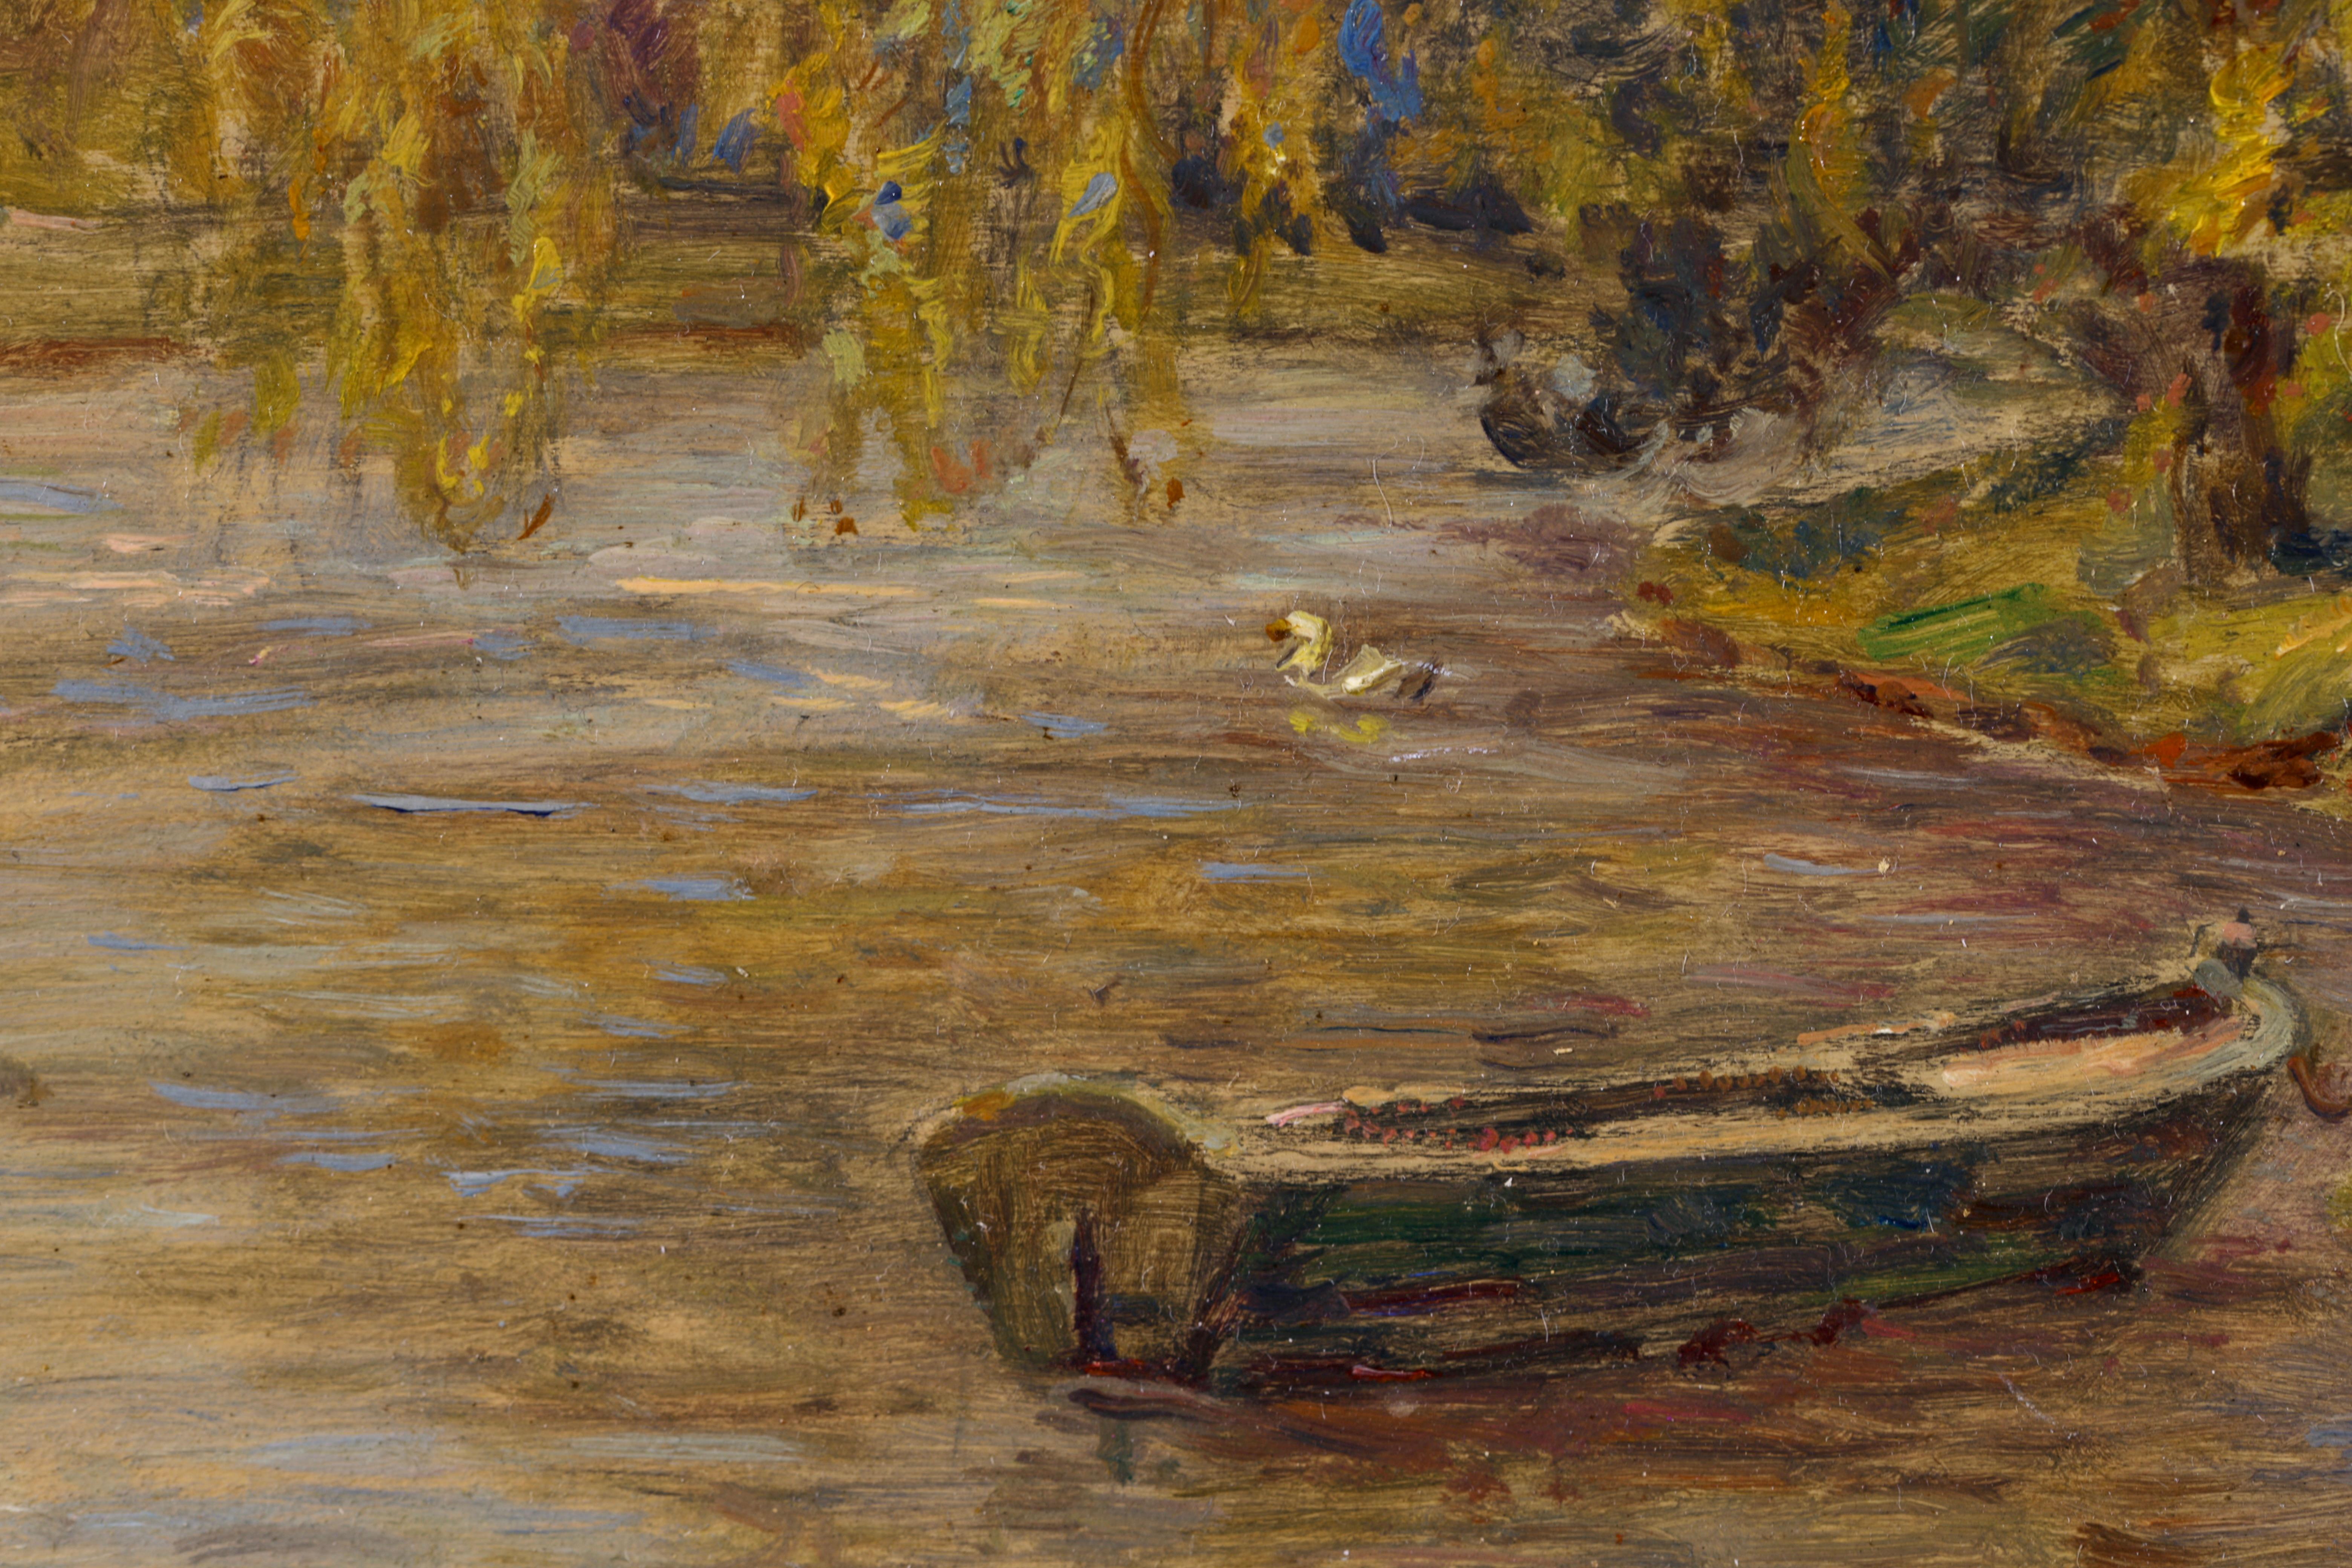 Punt on a River - Impressionist Oil, Figures by River Landscape by Henri Duhem For Sale 4